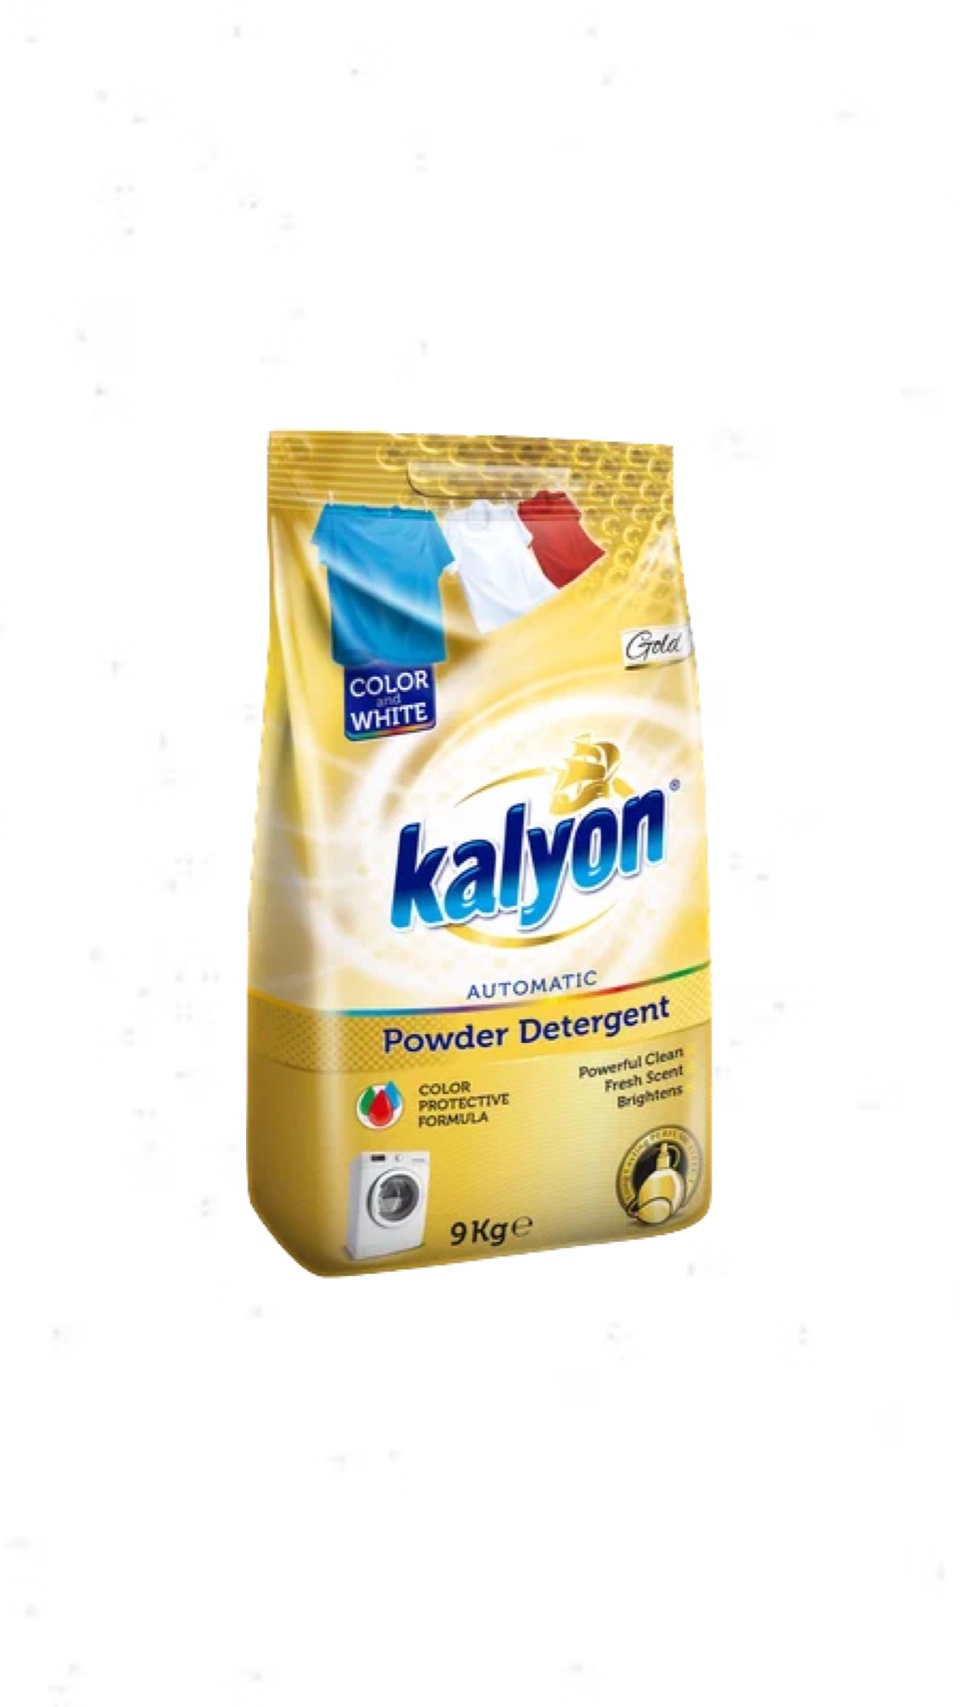 Стиральный порошок автомат "KALYON" для цветного и белого белья 9кг Gold (золотой) - 1 300 ₽, заказать онлайн.